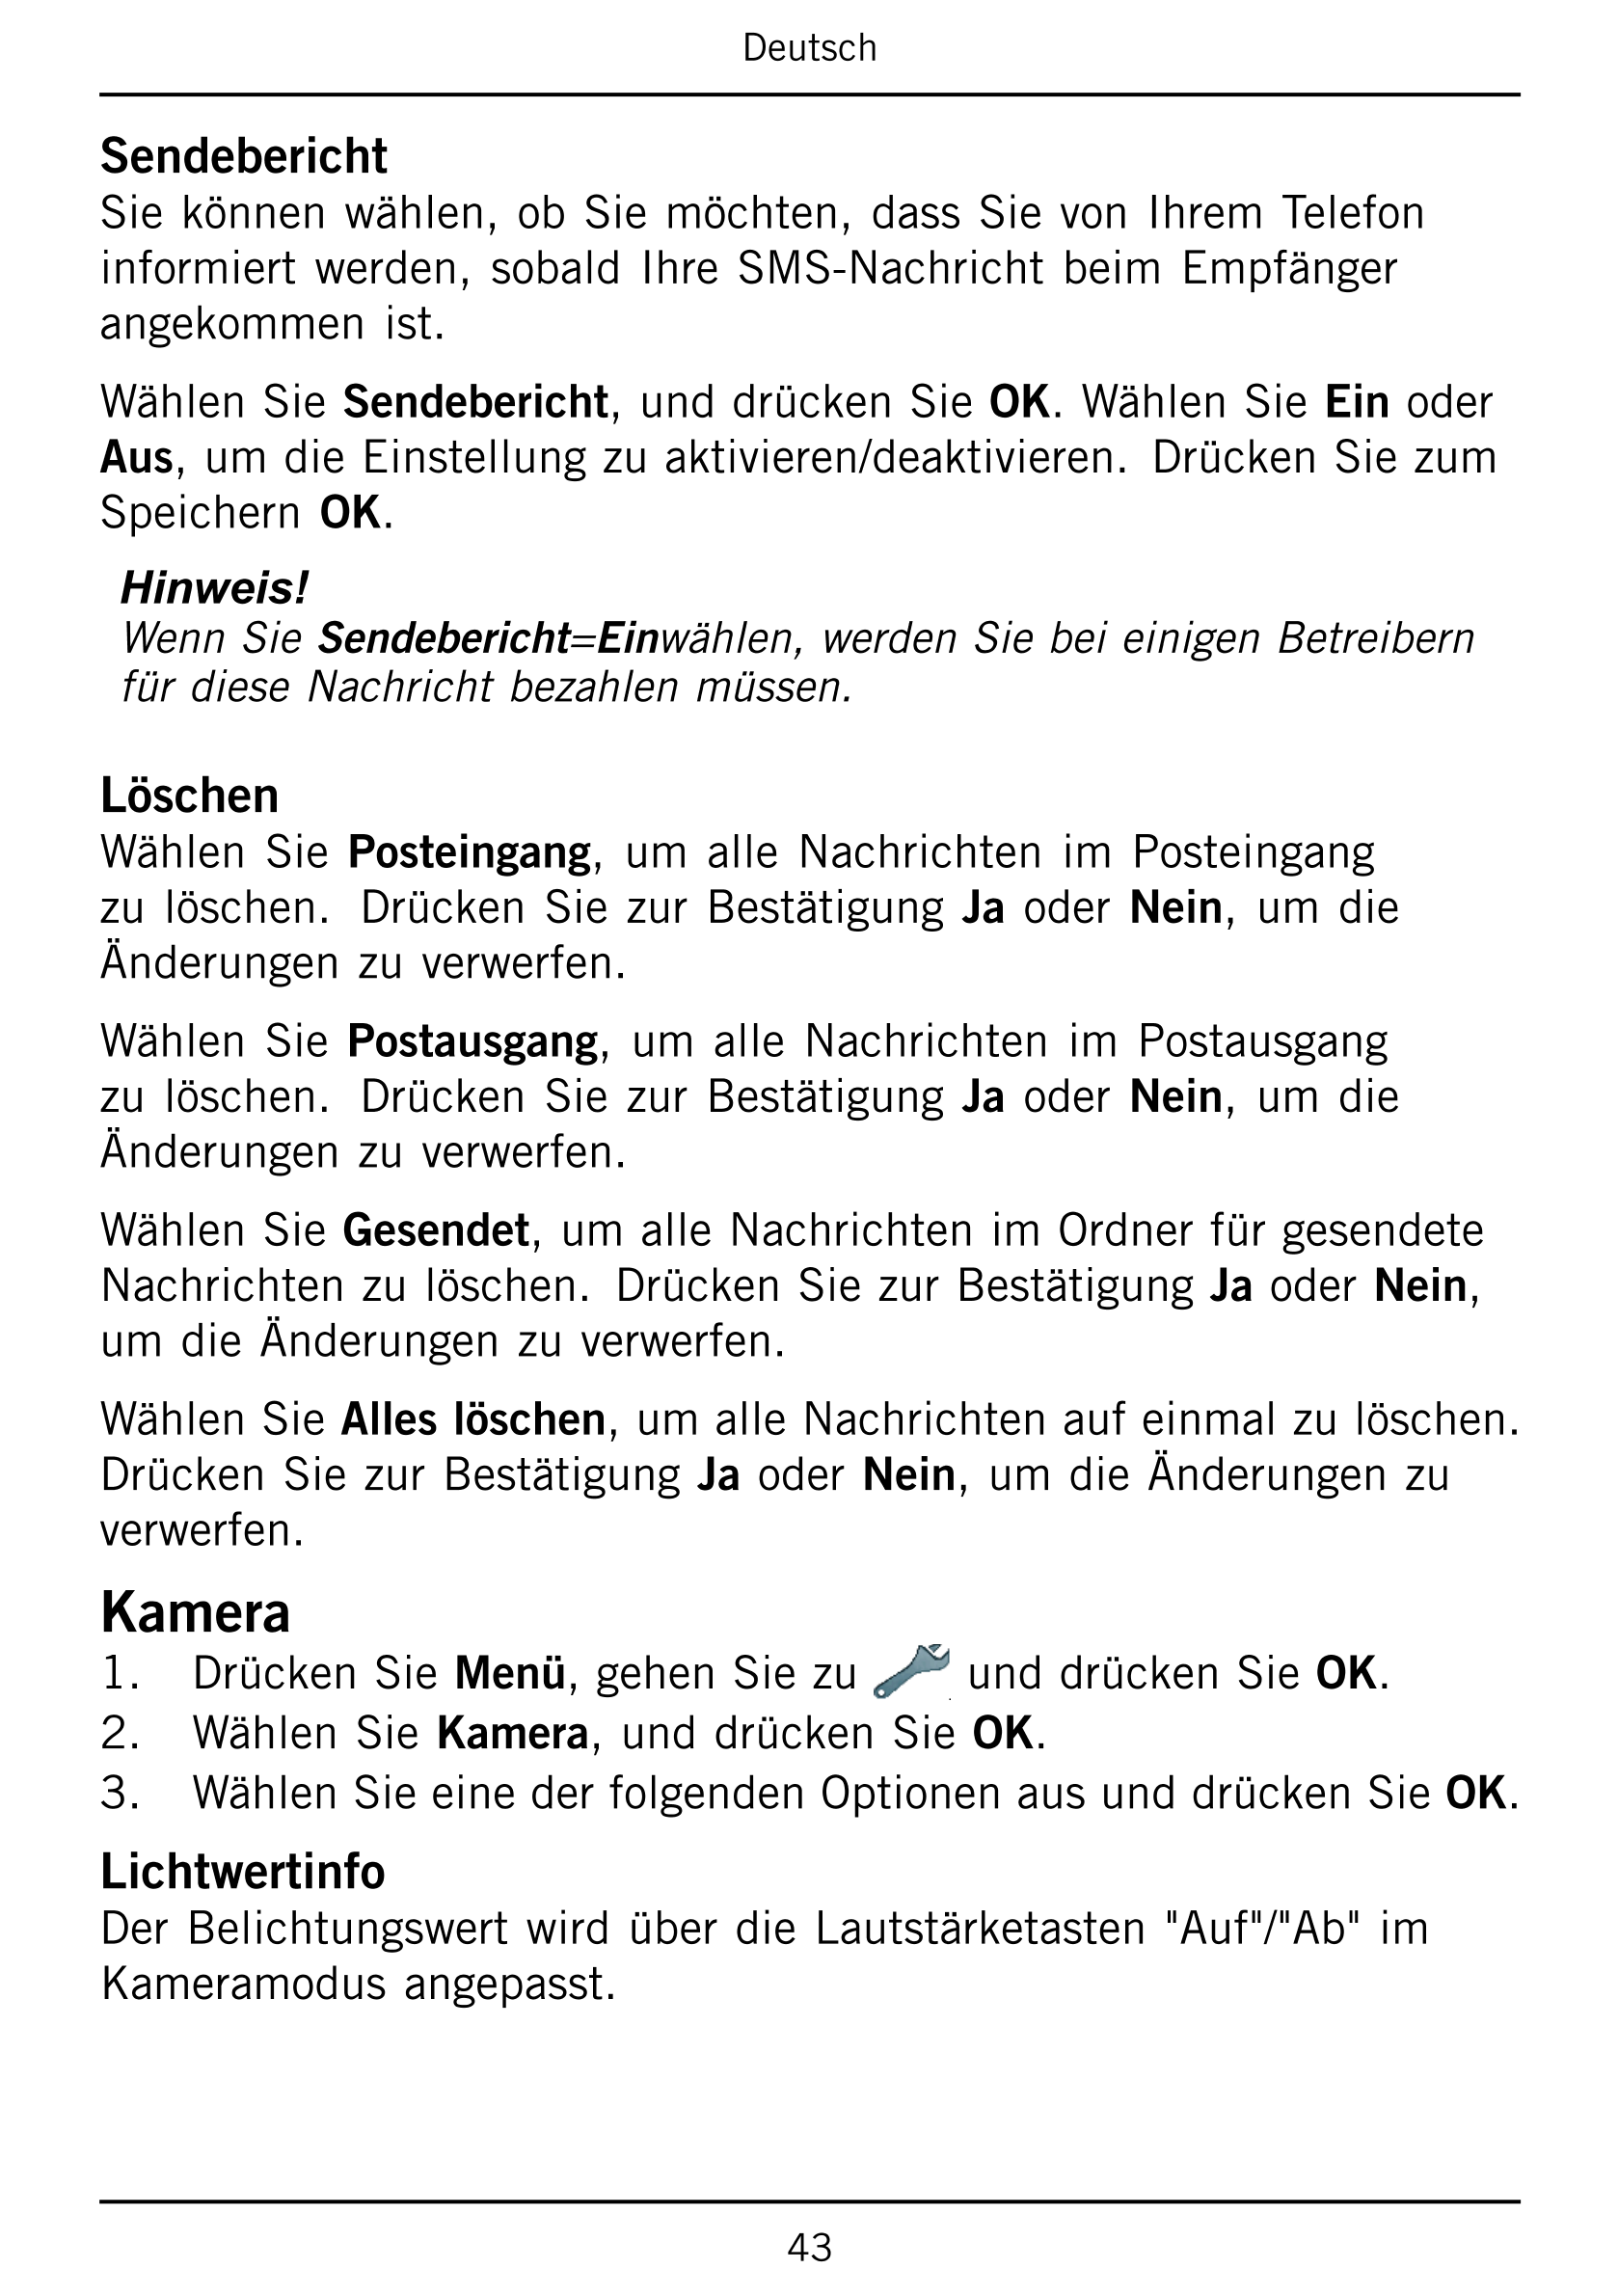 Deutsch
Sendebericht
Sie können wählen, ob Sie möchten, dass Sie von Ihrem Telefon
informiert werden,  sobald Ihre SMS-Nachricht